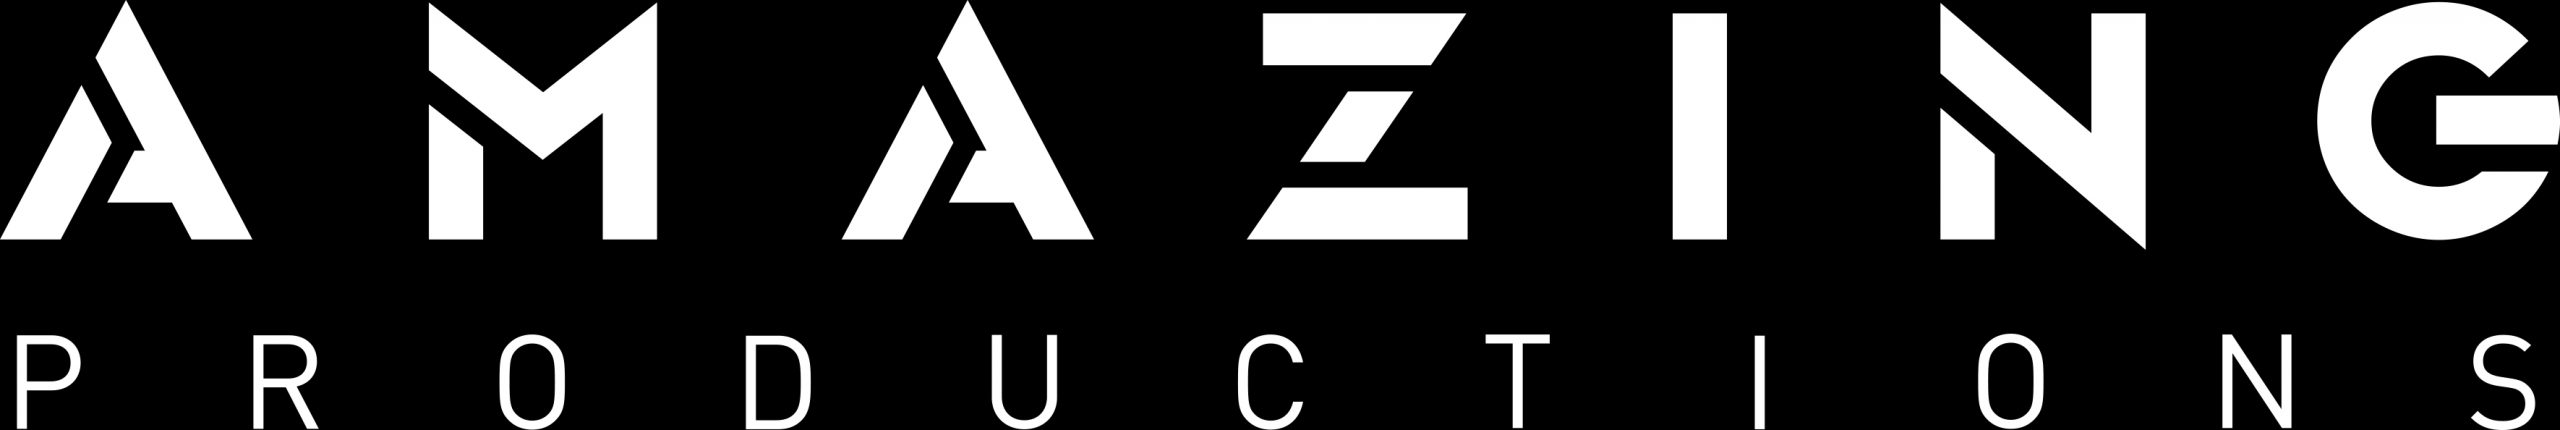 AMAZING Productions logo